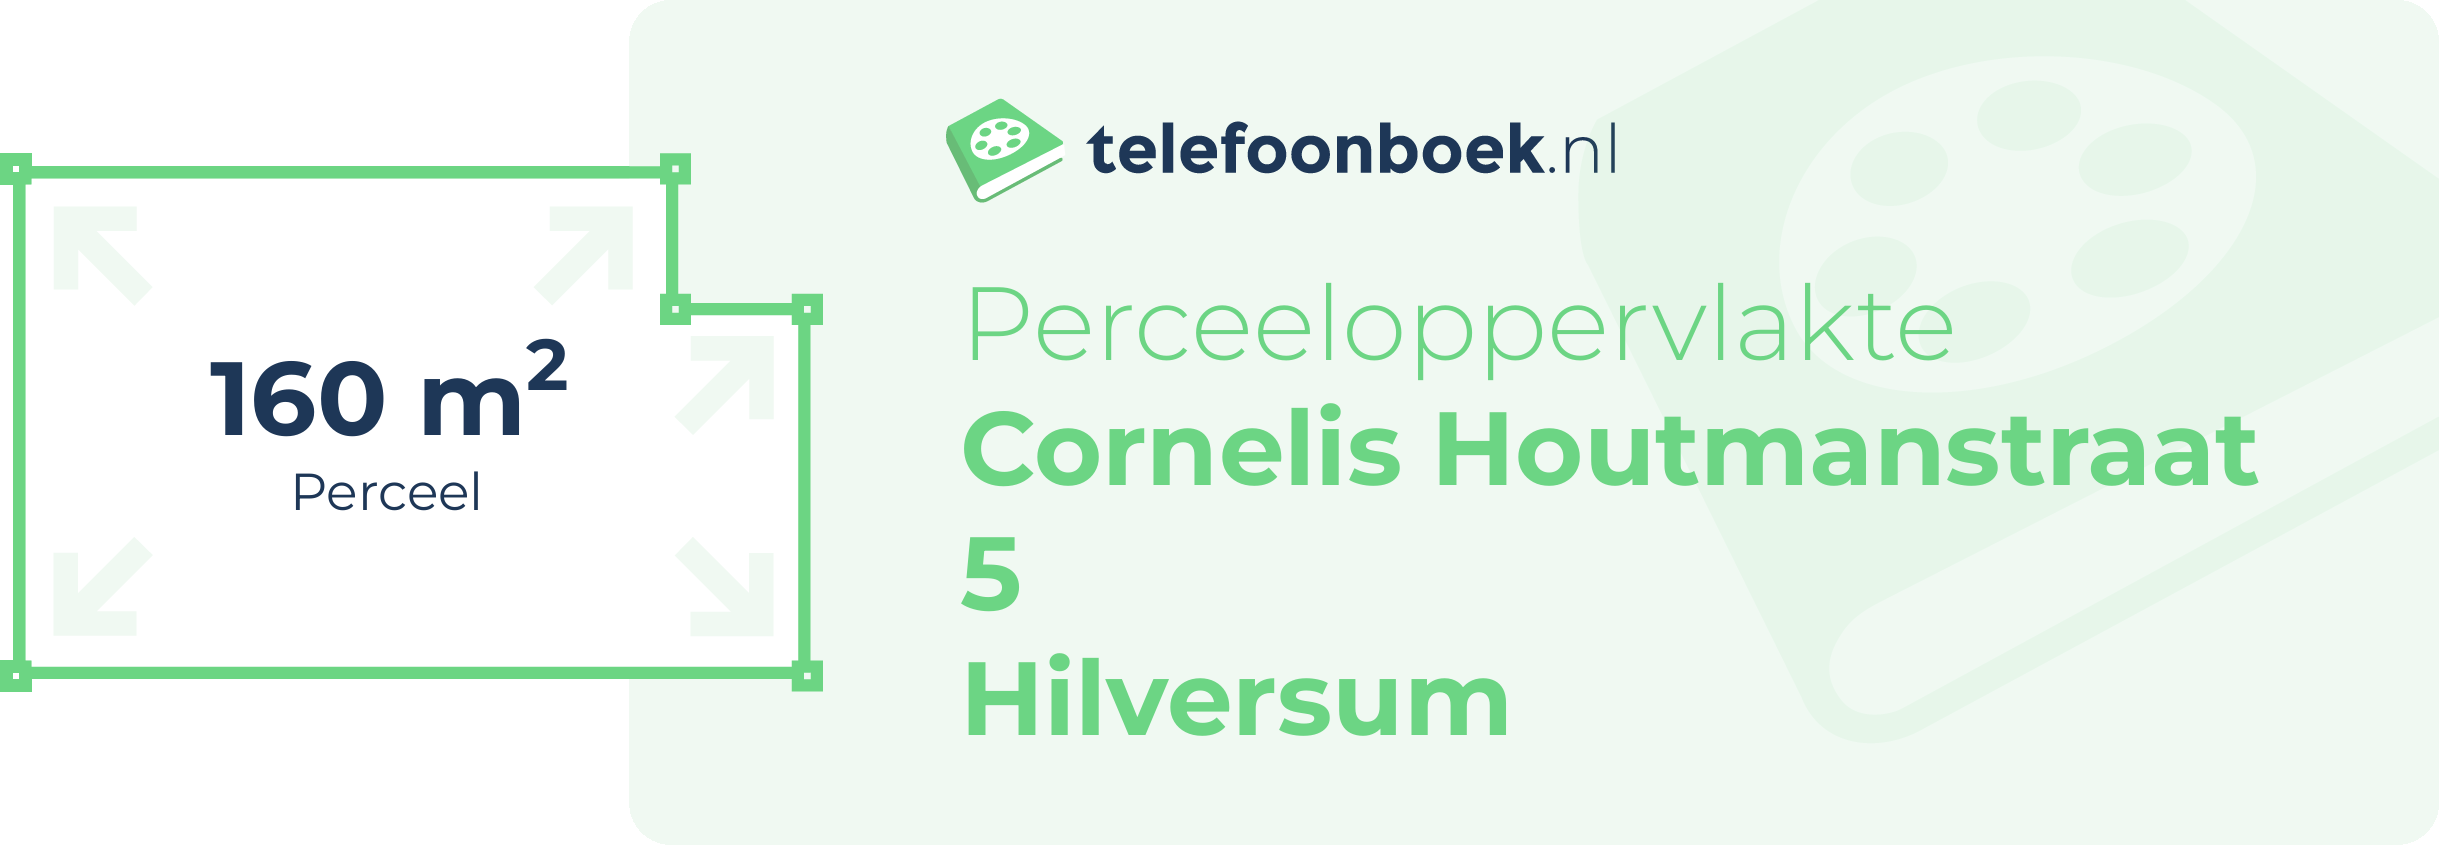 Perceeloppervlakte Cornelis Houtmanstraat 5 Hilversum